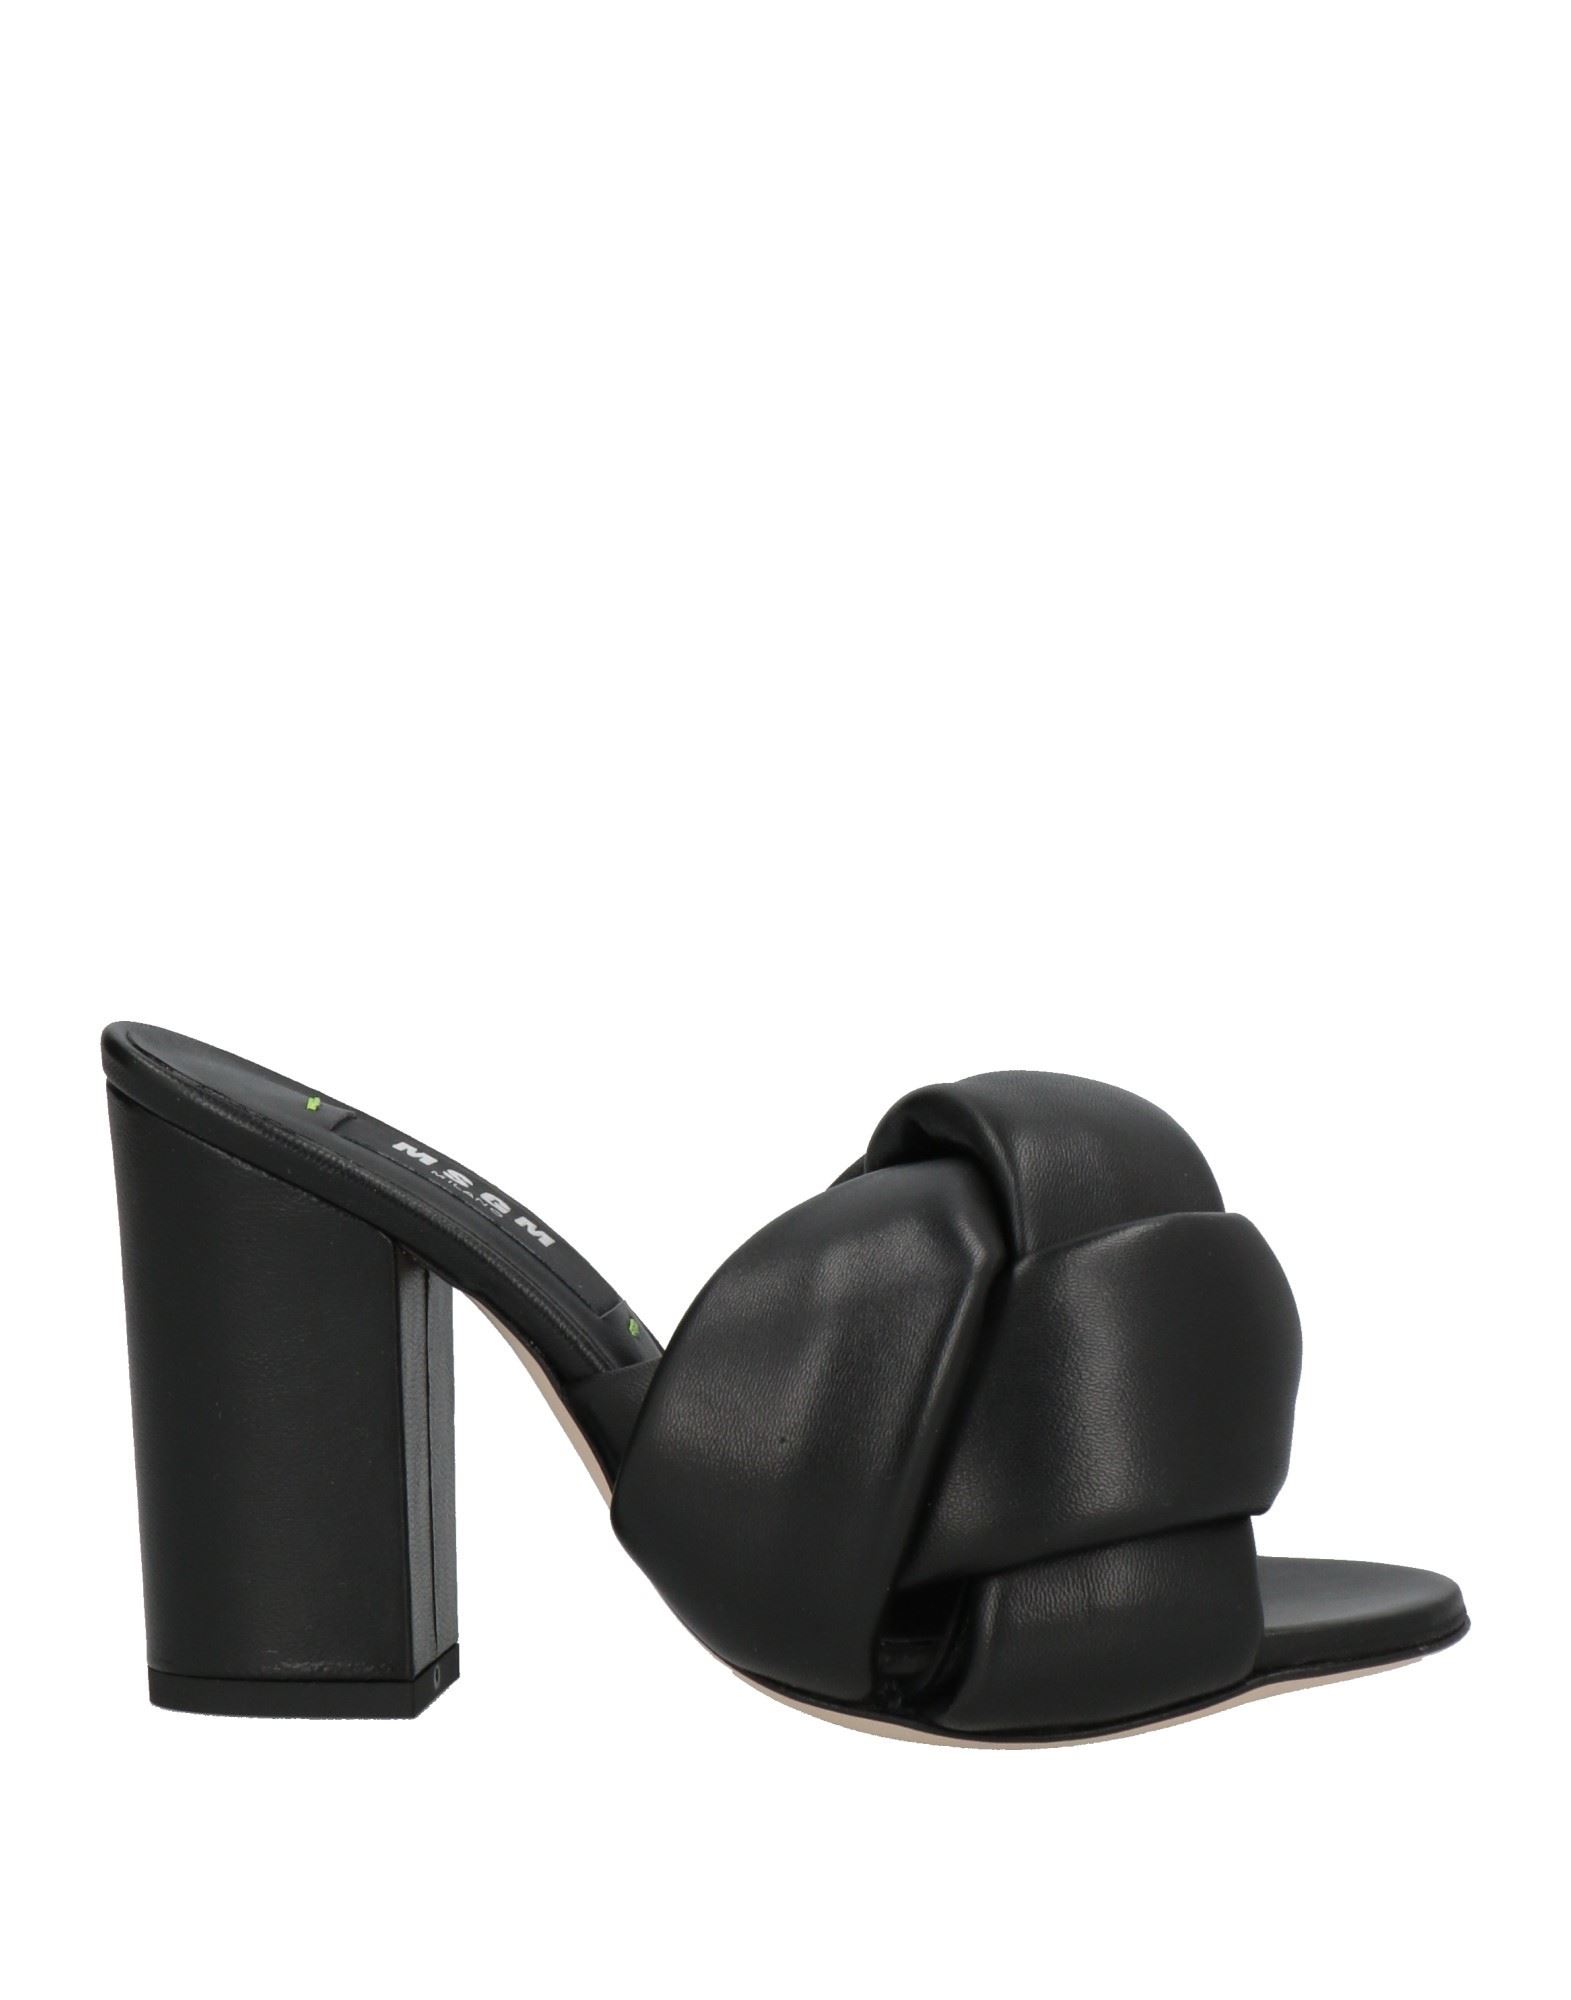 Shop Msgm Woman Sandals Black Size 8 Soft Leather